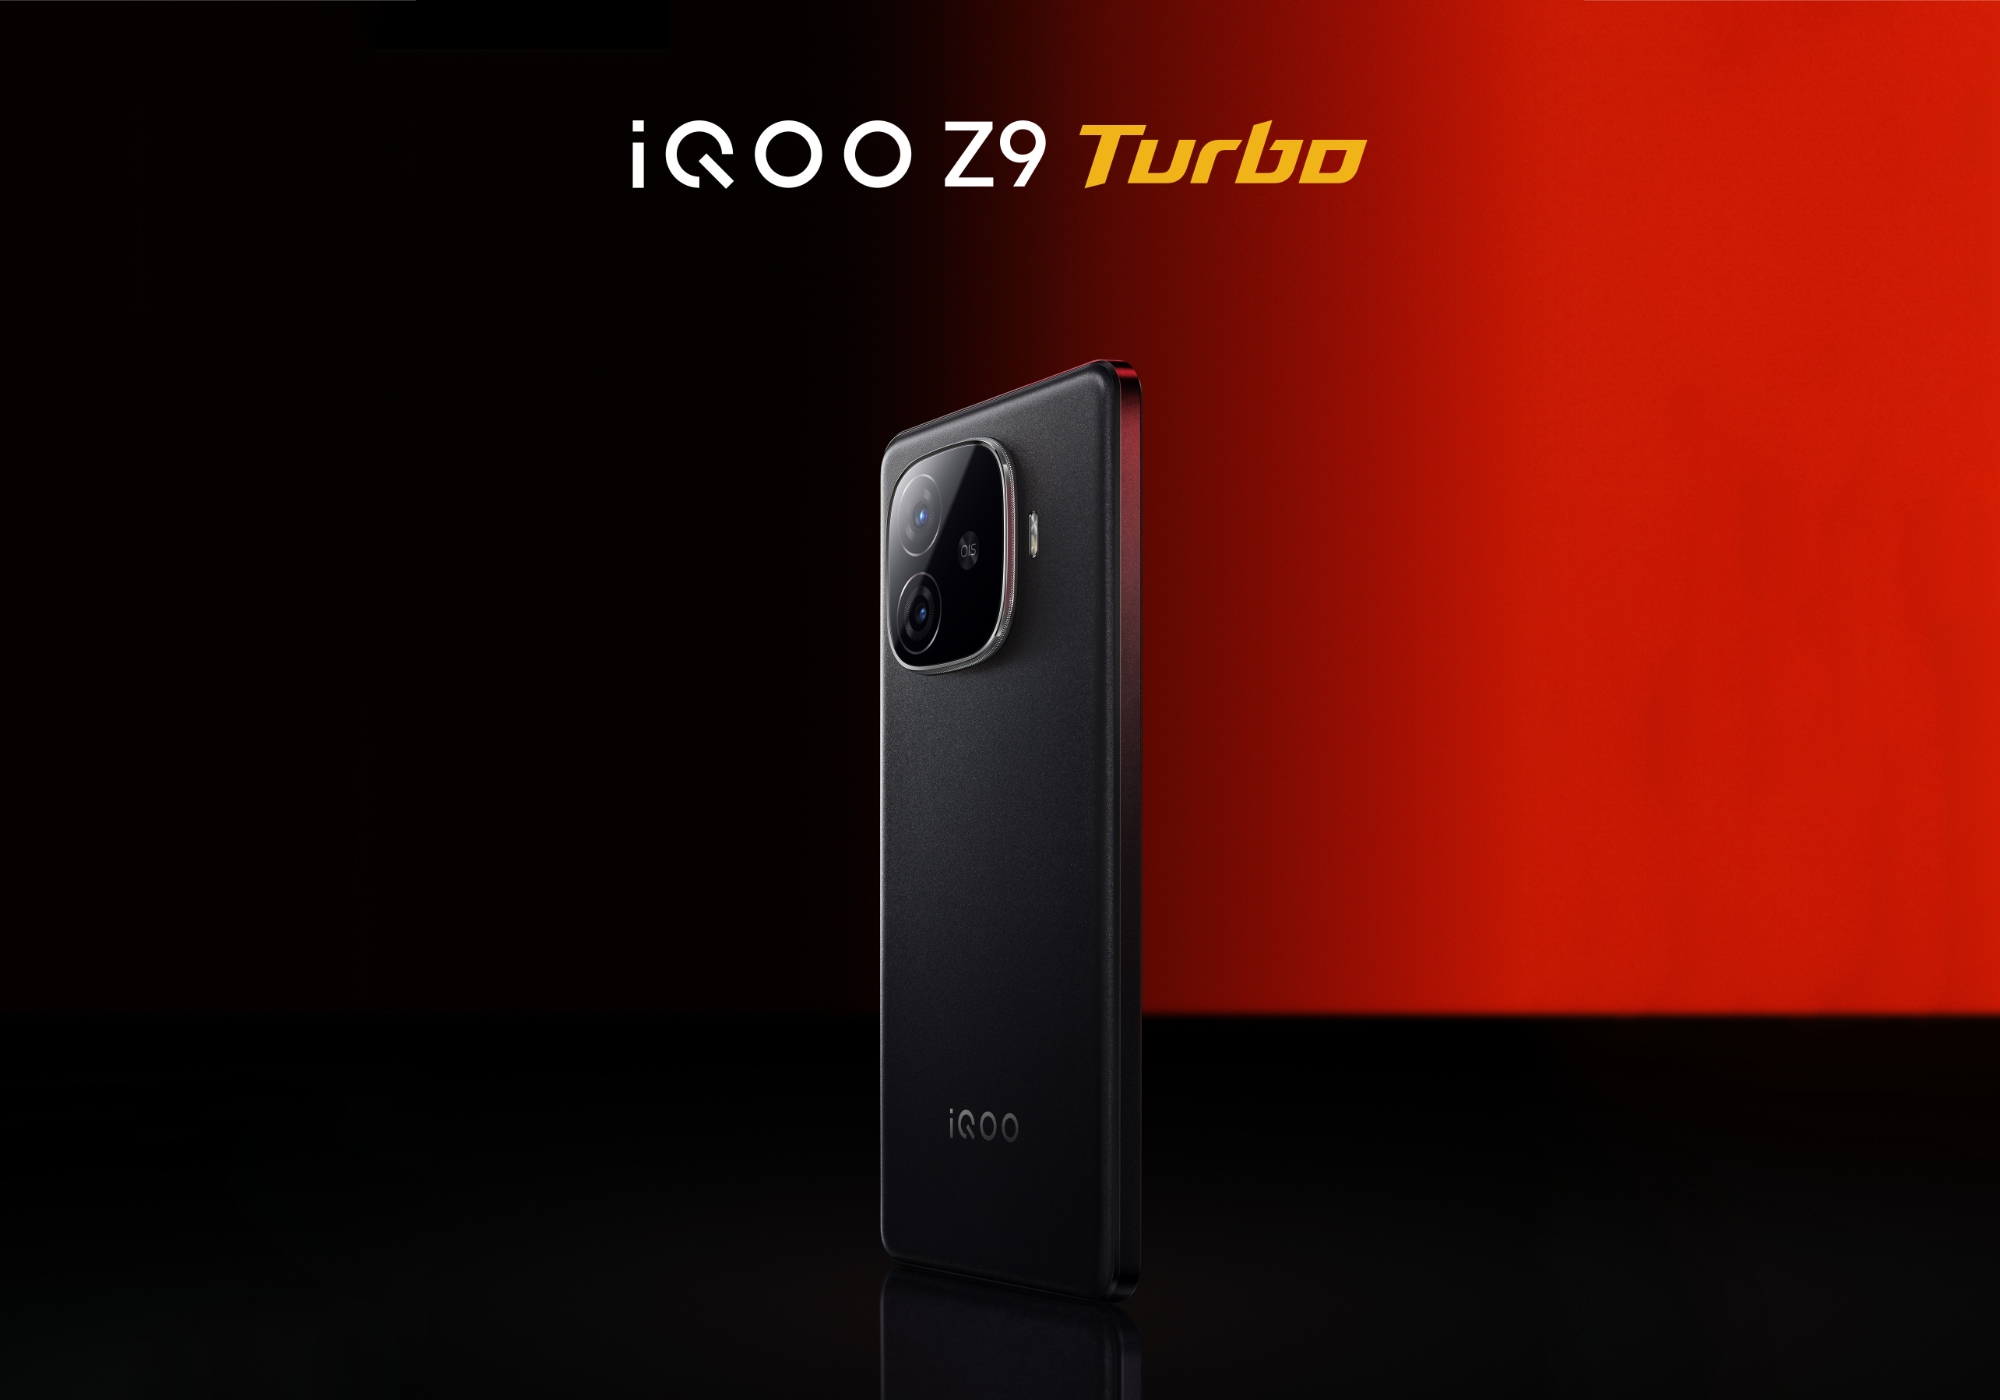 Nie czekając na prezentację: vivo ujawniło wygląd iQOO Z9 Turbo